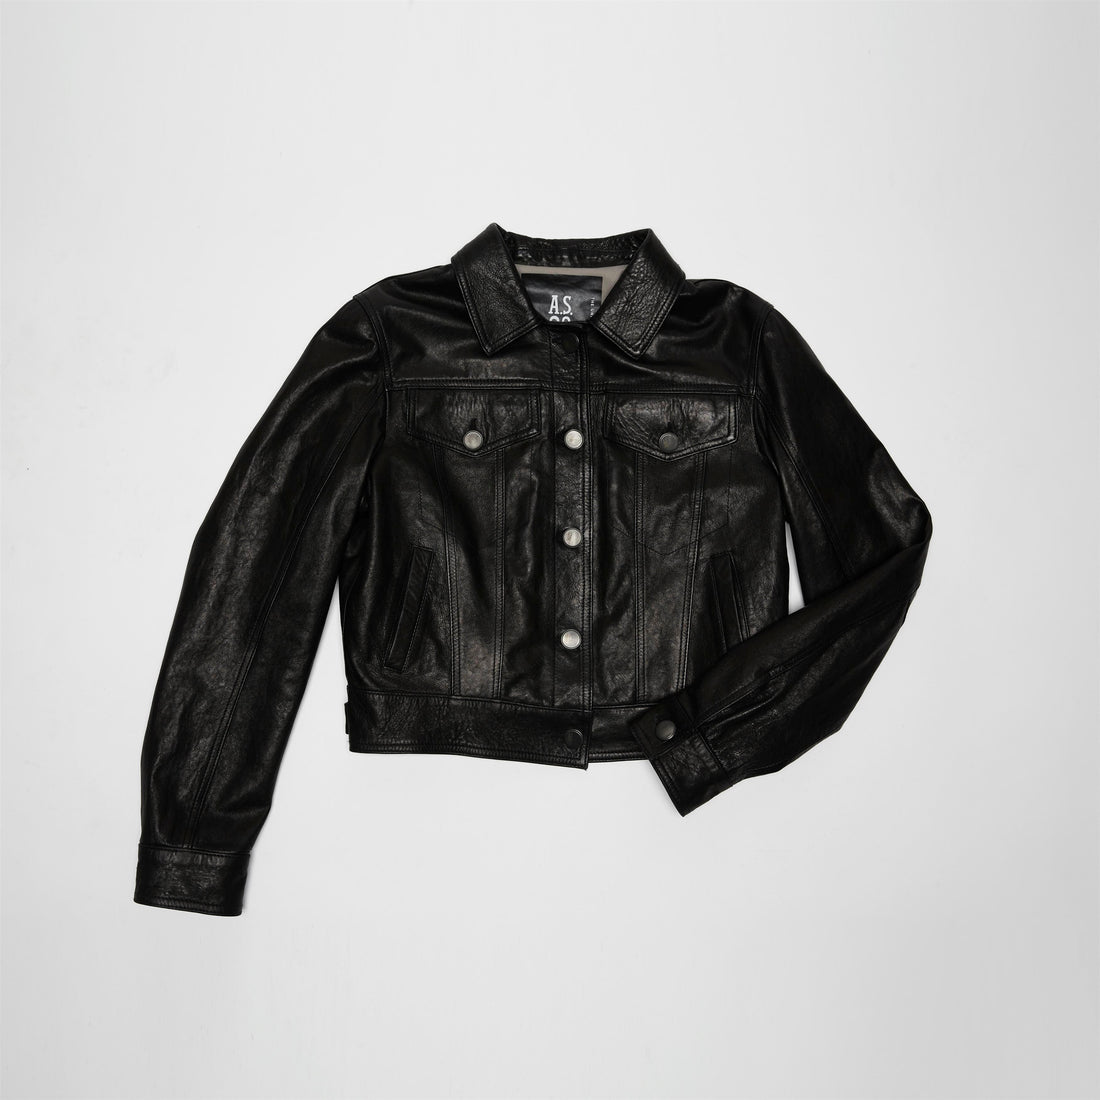 A.S.98 Leather Jacket - Jason - A.S. 98 - 